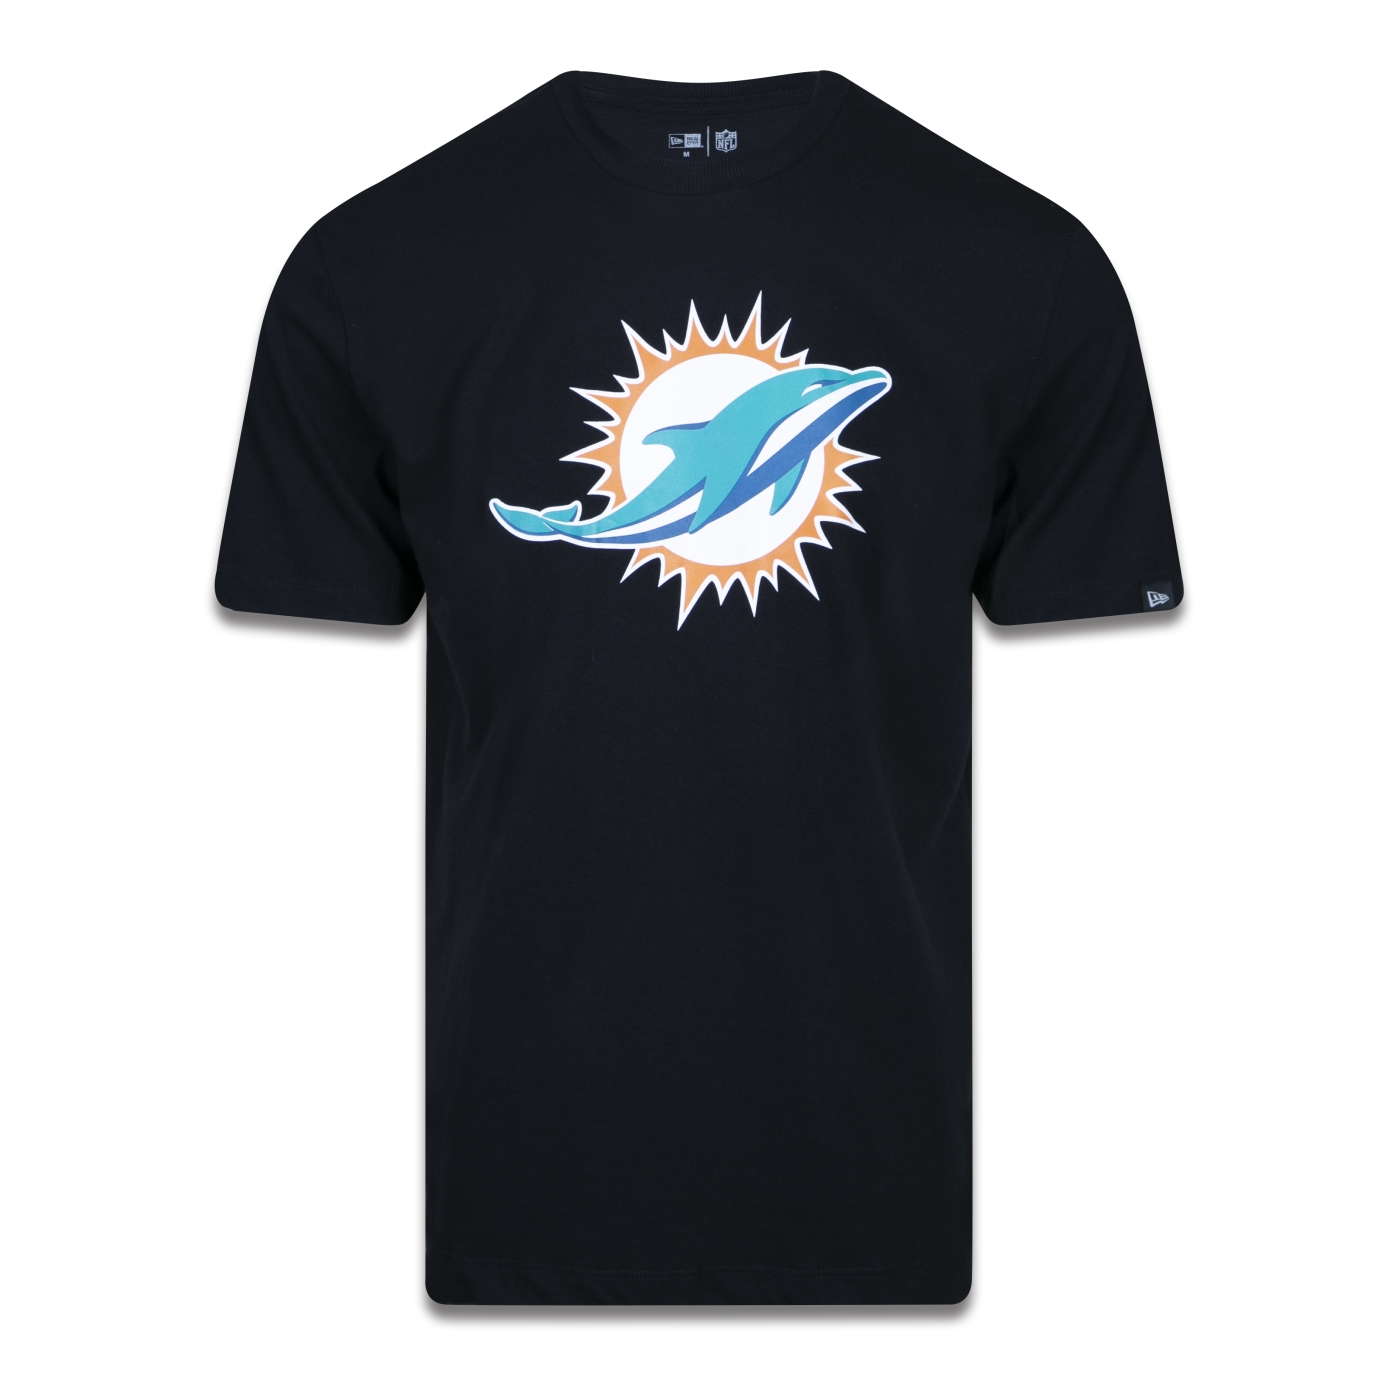 Camiseta Plus Size Miami Dolphins NFL New Era